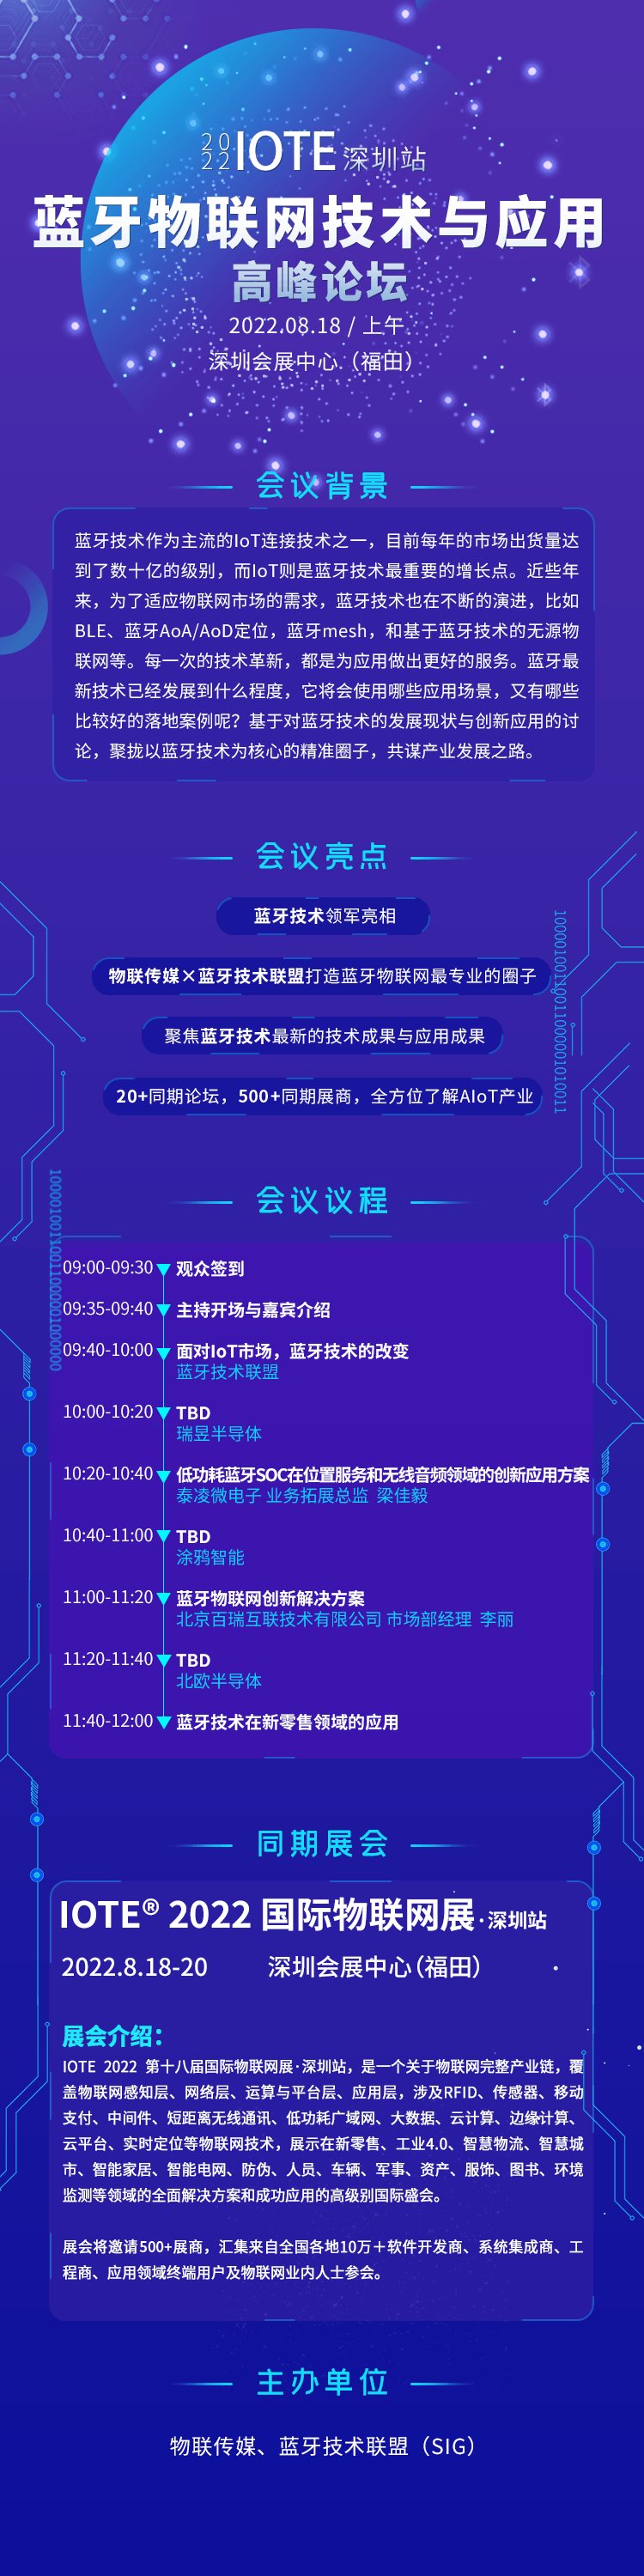 IOTE 2022·深圳藍牙物聯網技術與應用高峰論壇